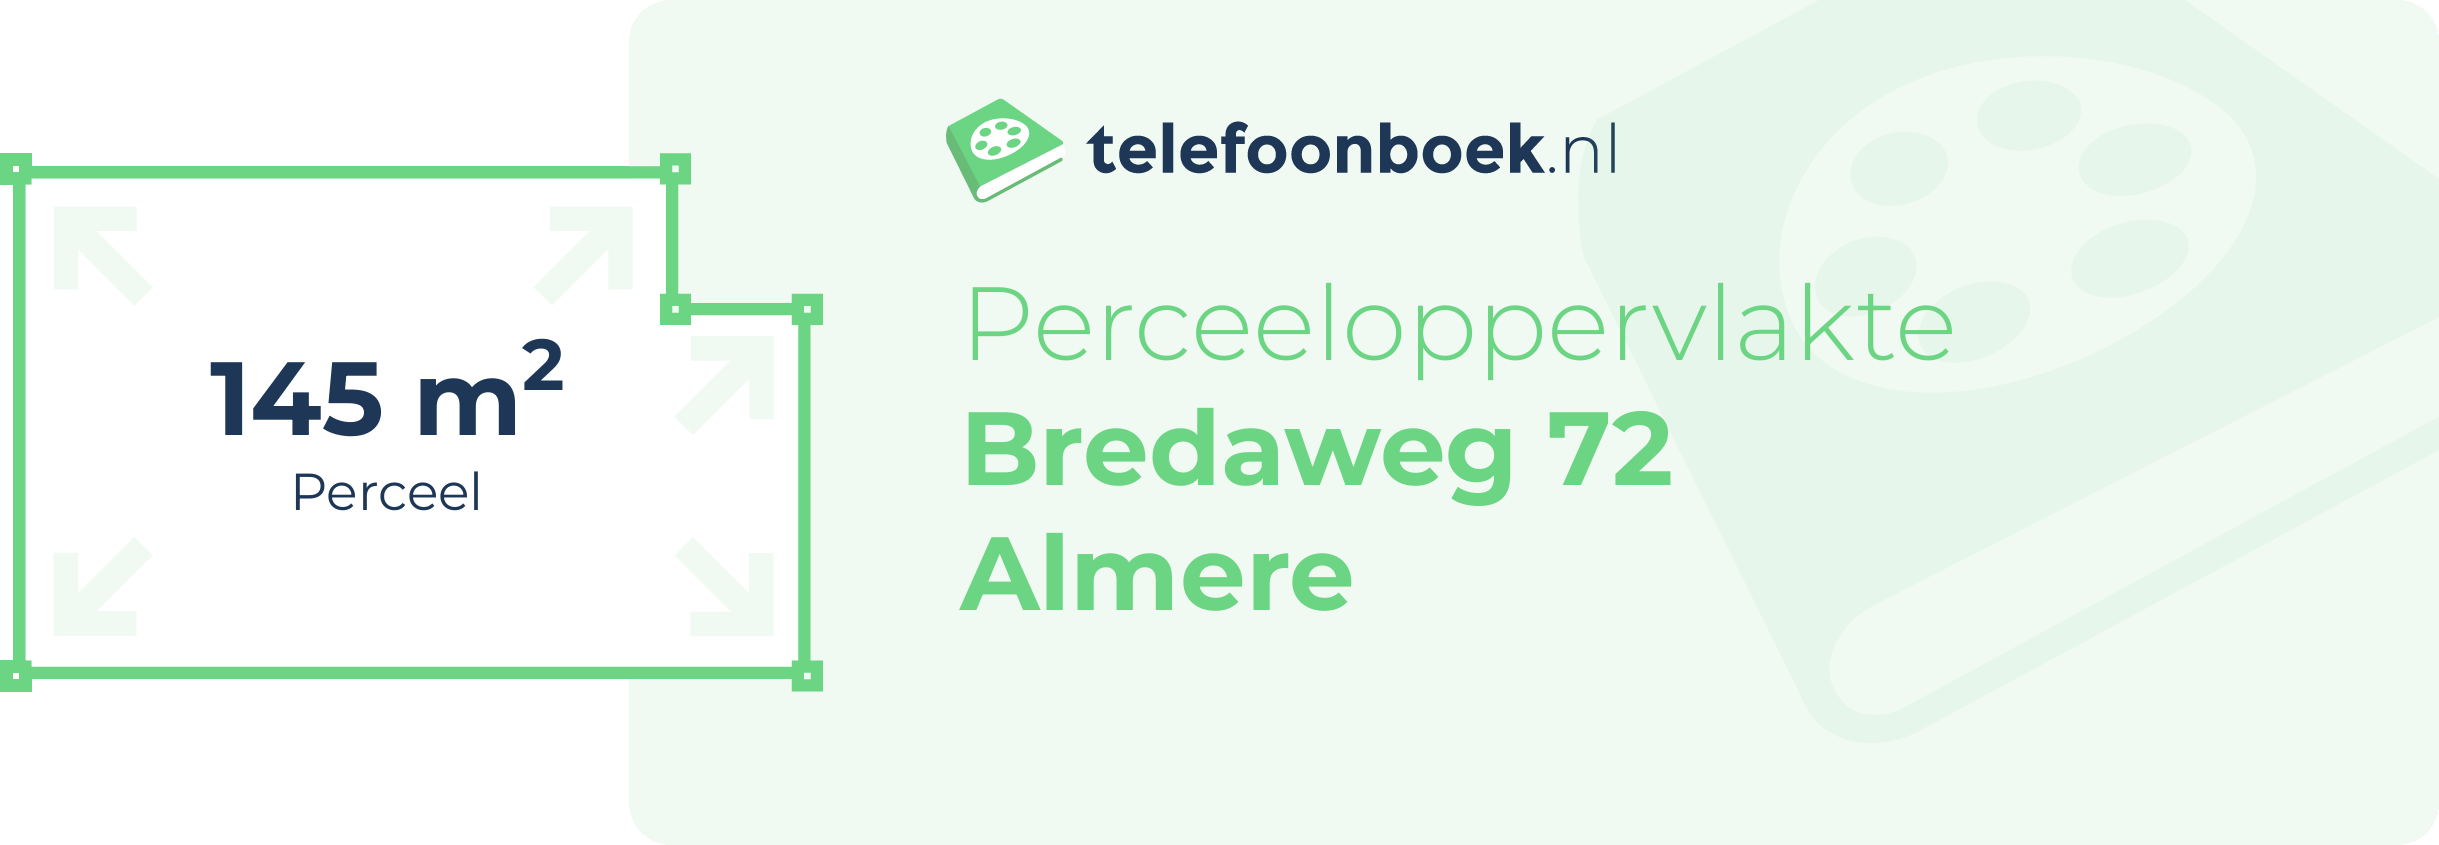 Perceeloppervlakte Bredaweg 72 Almere